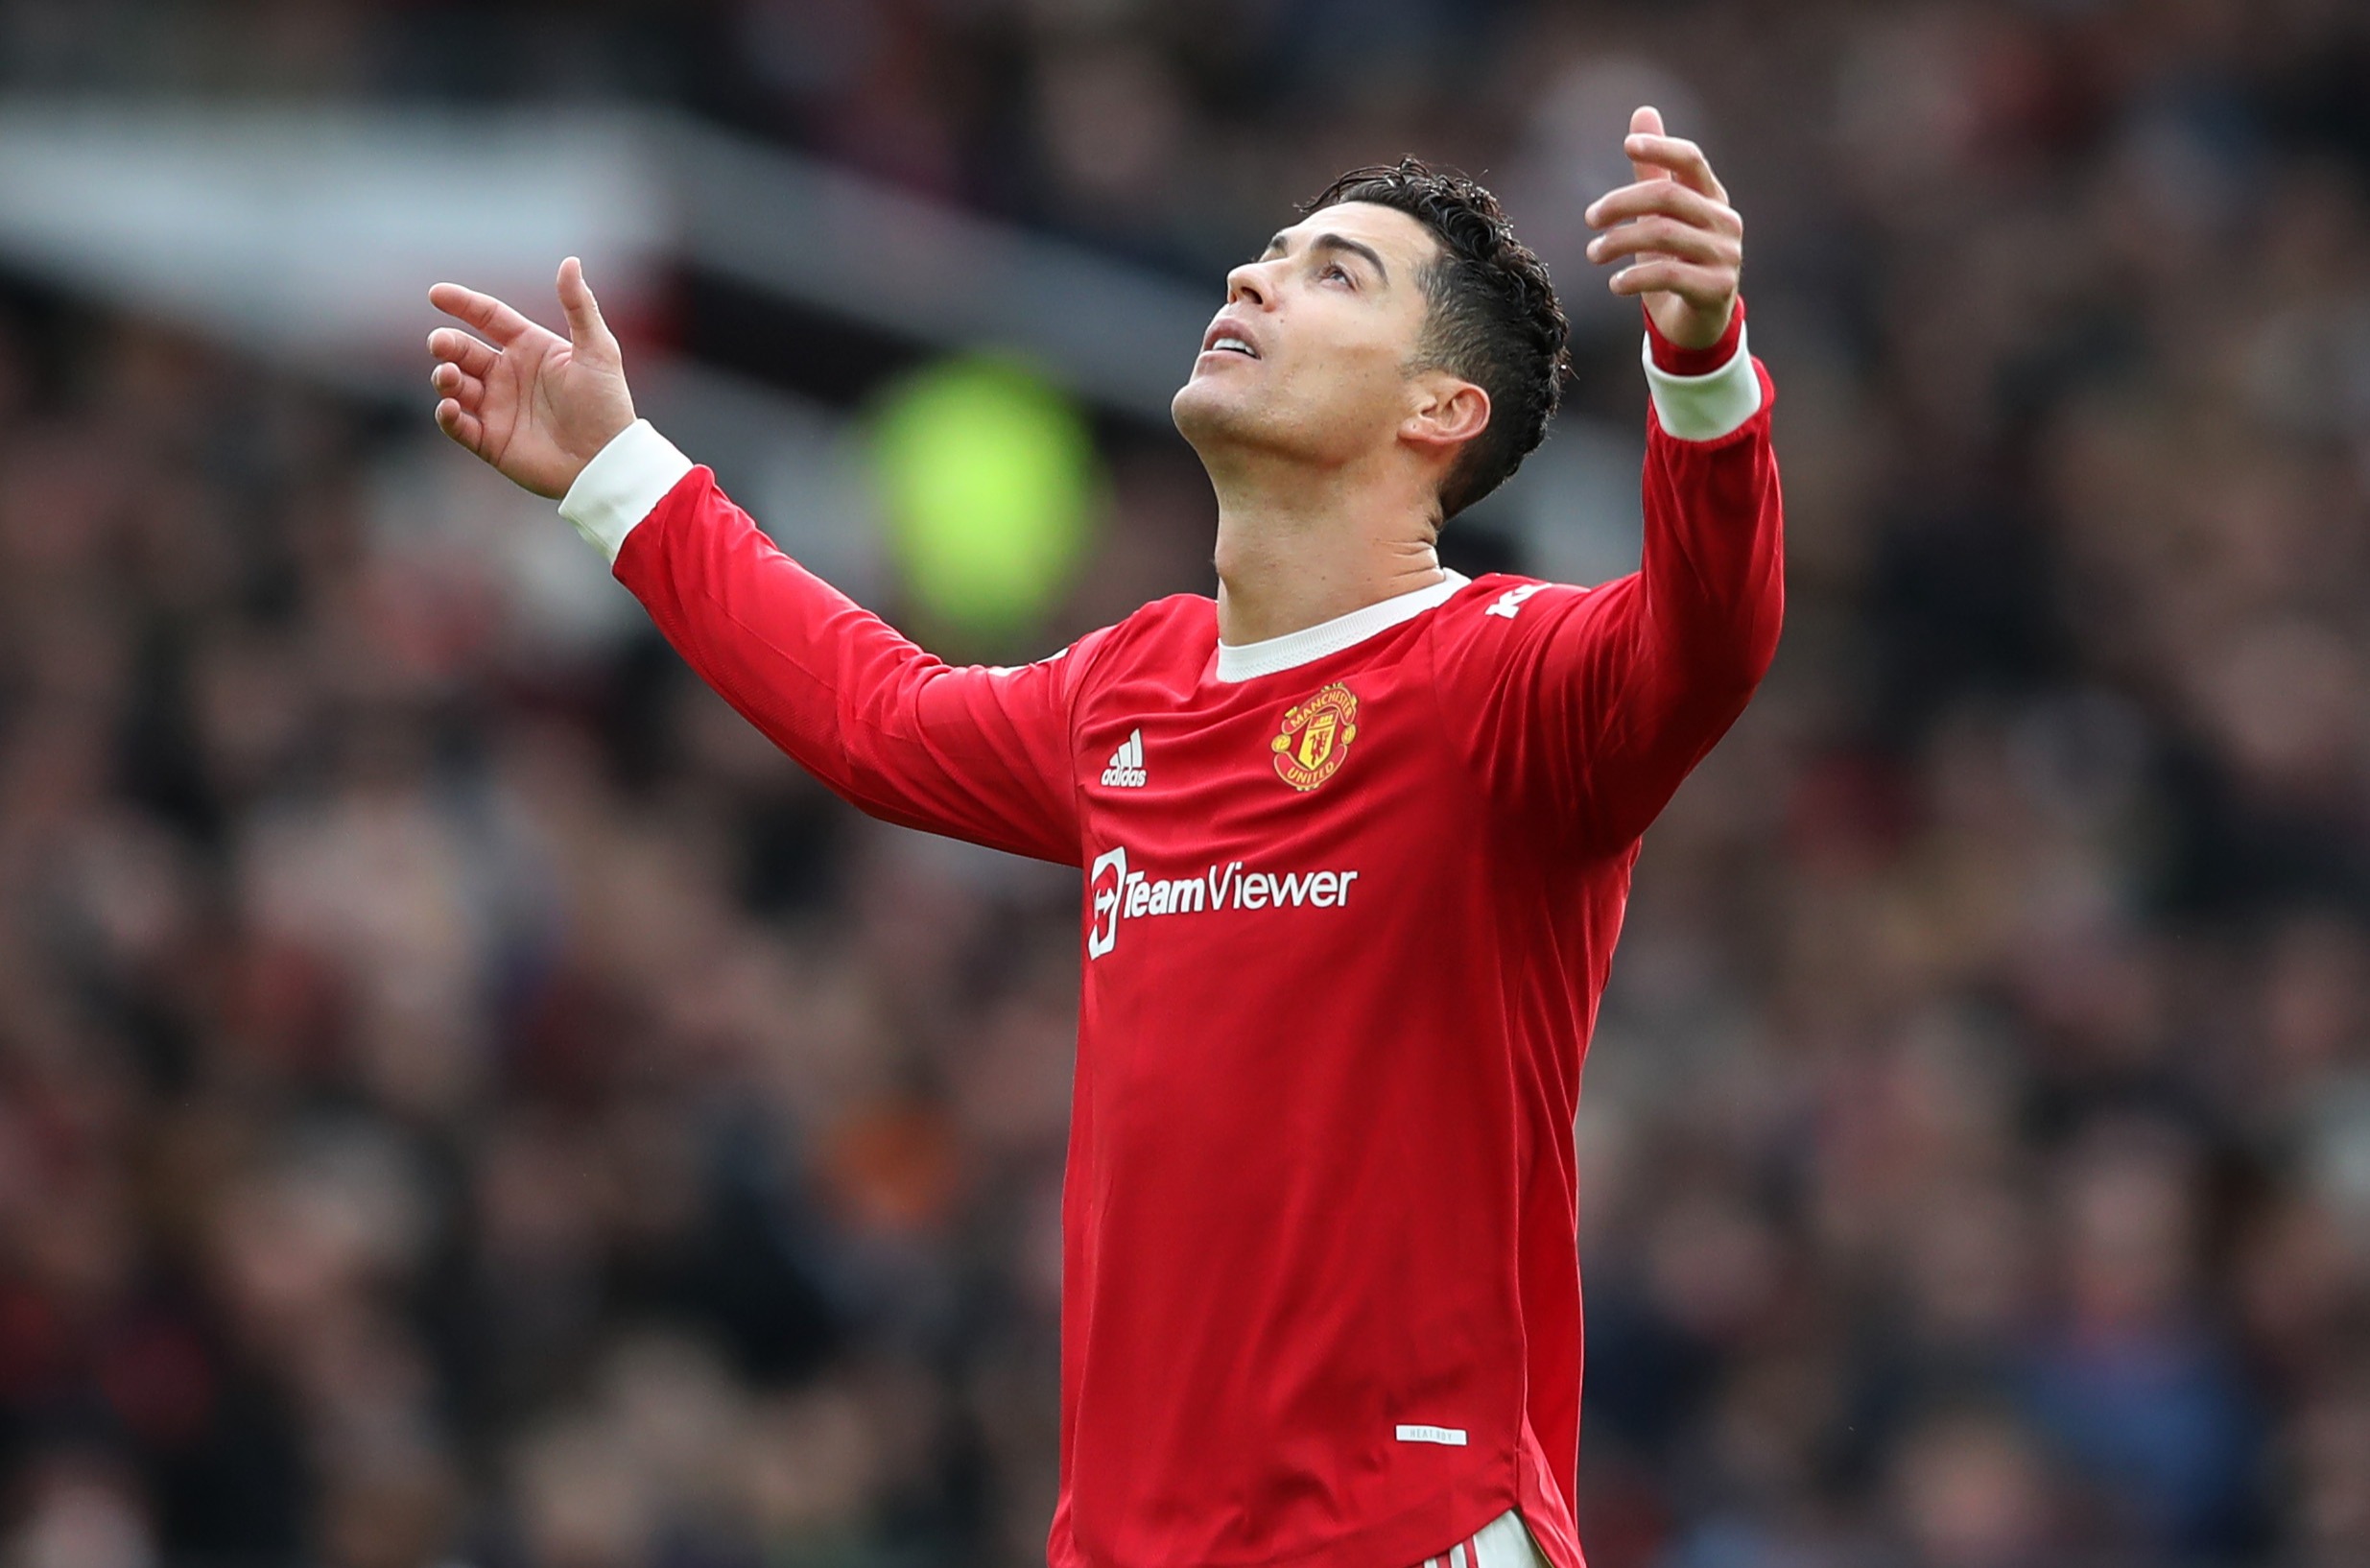 El futuro de Cristiano Ronaldo en el Manchester United está en serias dudas tras perderse el derbi del domingo para volar a Portugal